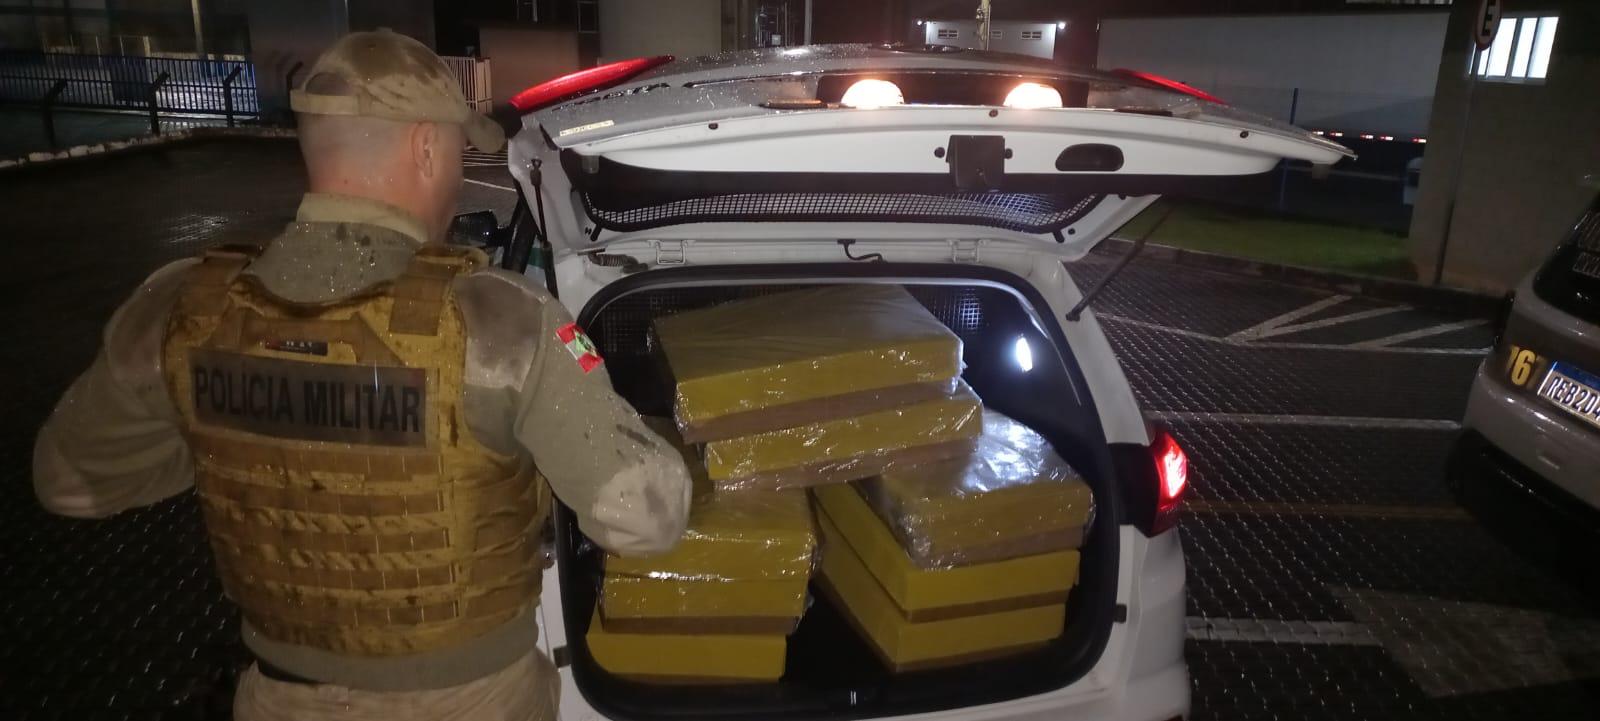 Mais de 295 quilos de pasta base de cocaína são apreendidos em Garuva.